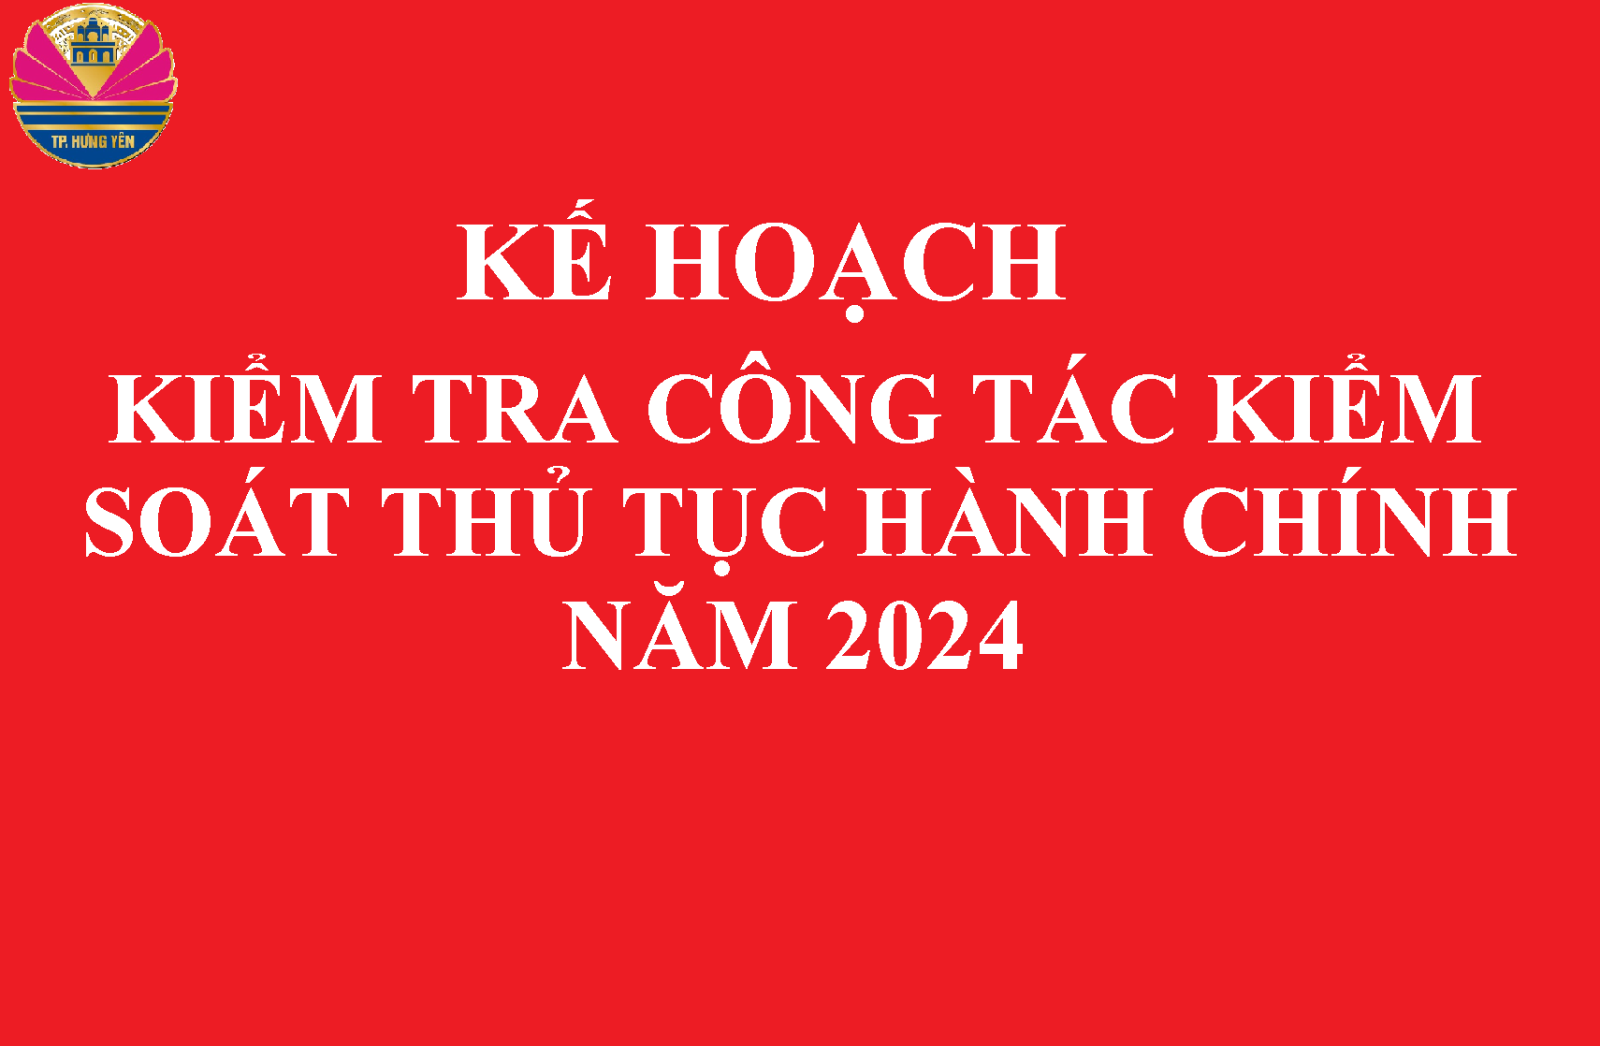 KẾ HOẠCH Kiểm tra công tác kiểm soát thủ tục hành chính năm 2024 của UBND thành phố Hưng Yên